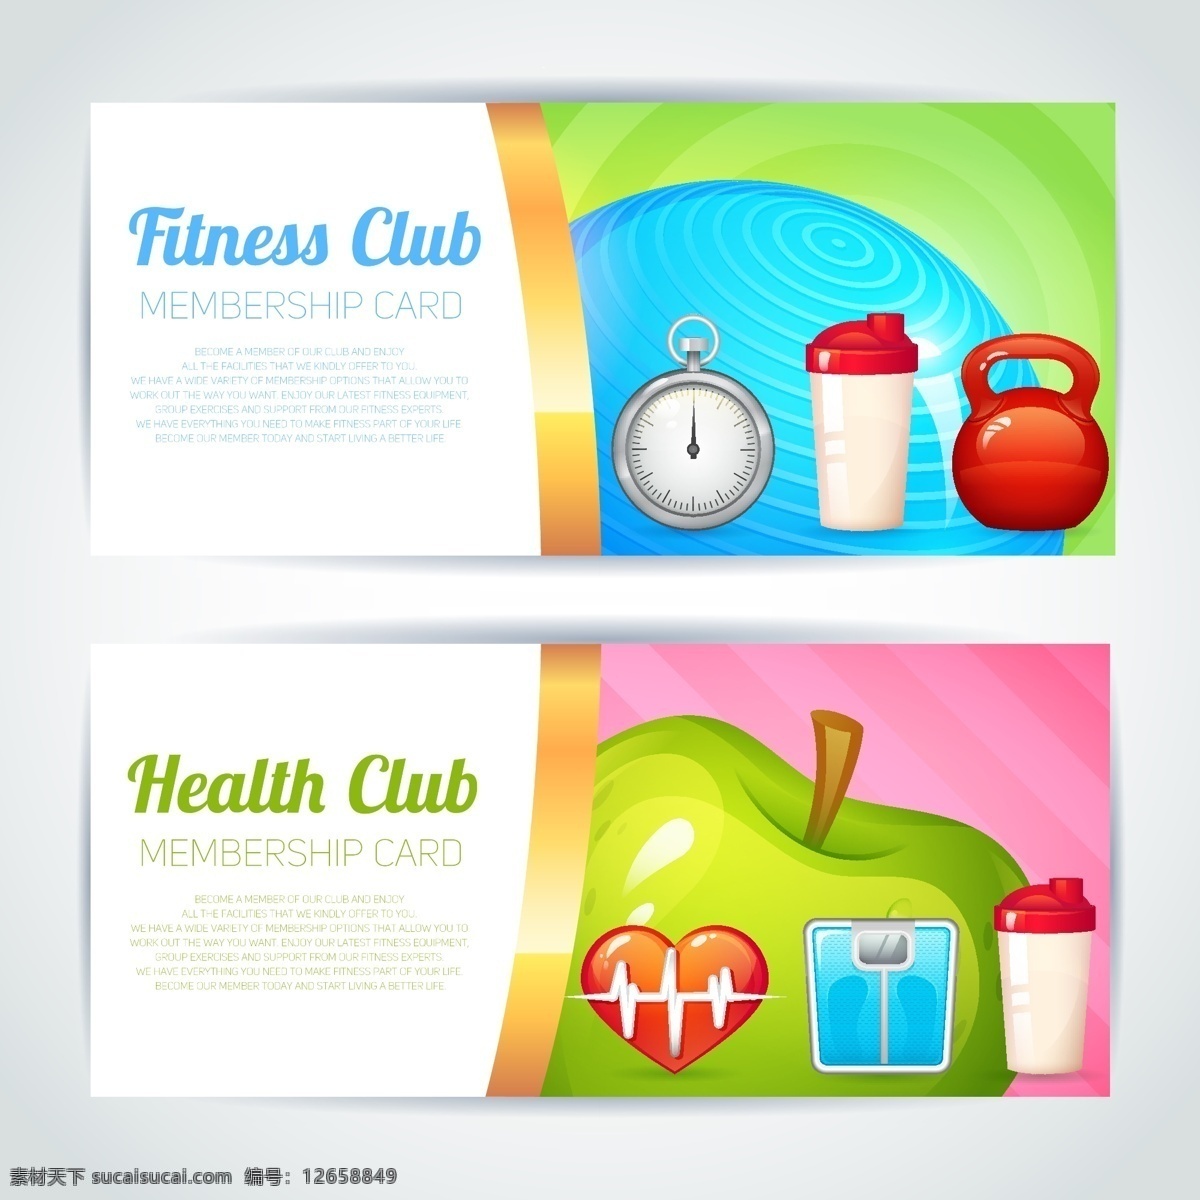 健身标语集 横幅 模板 体育 健身 健康 健身房 颜色 网络 网站 头部 网页横幅 运动 培训 网站模板